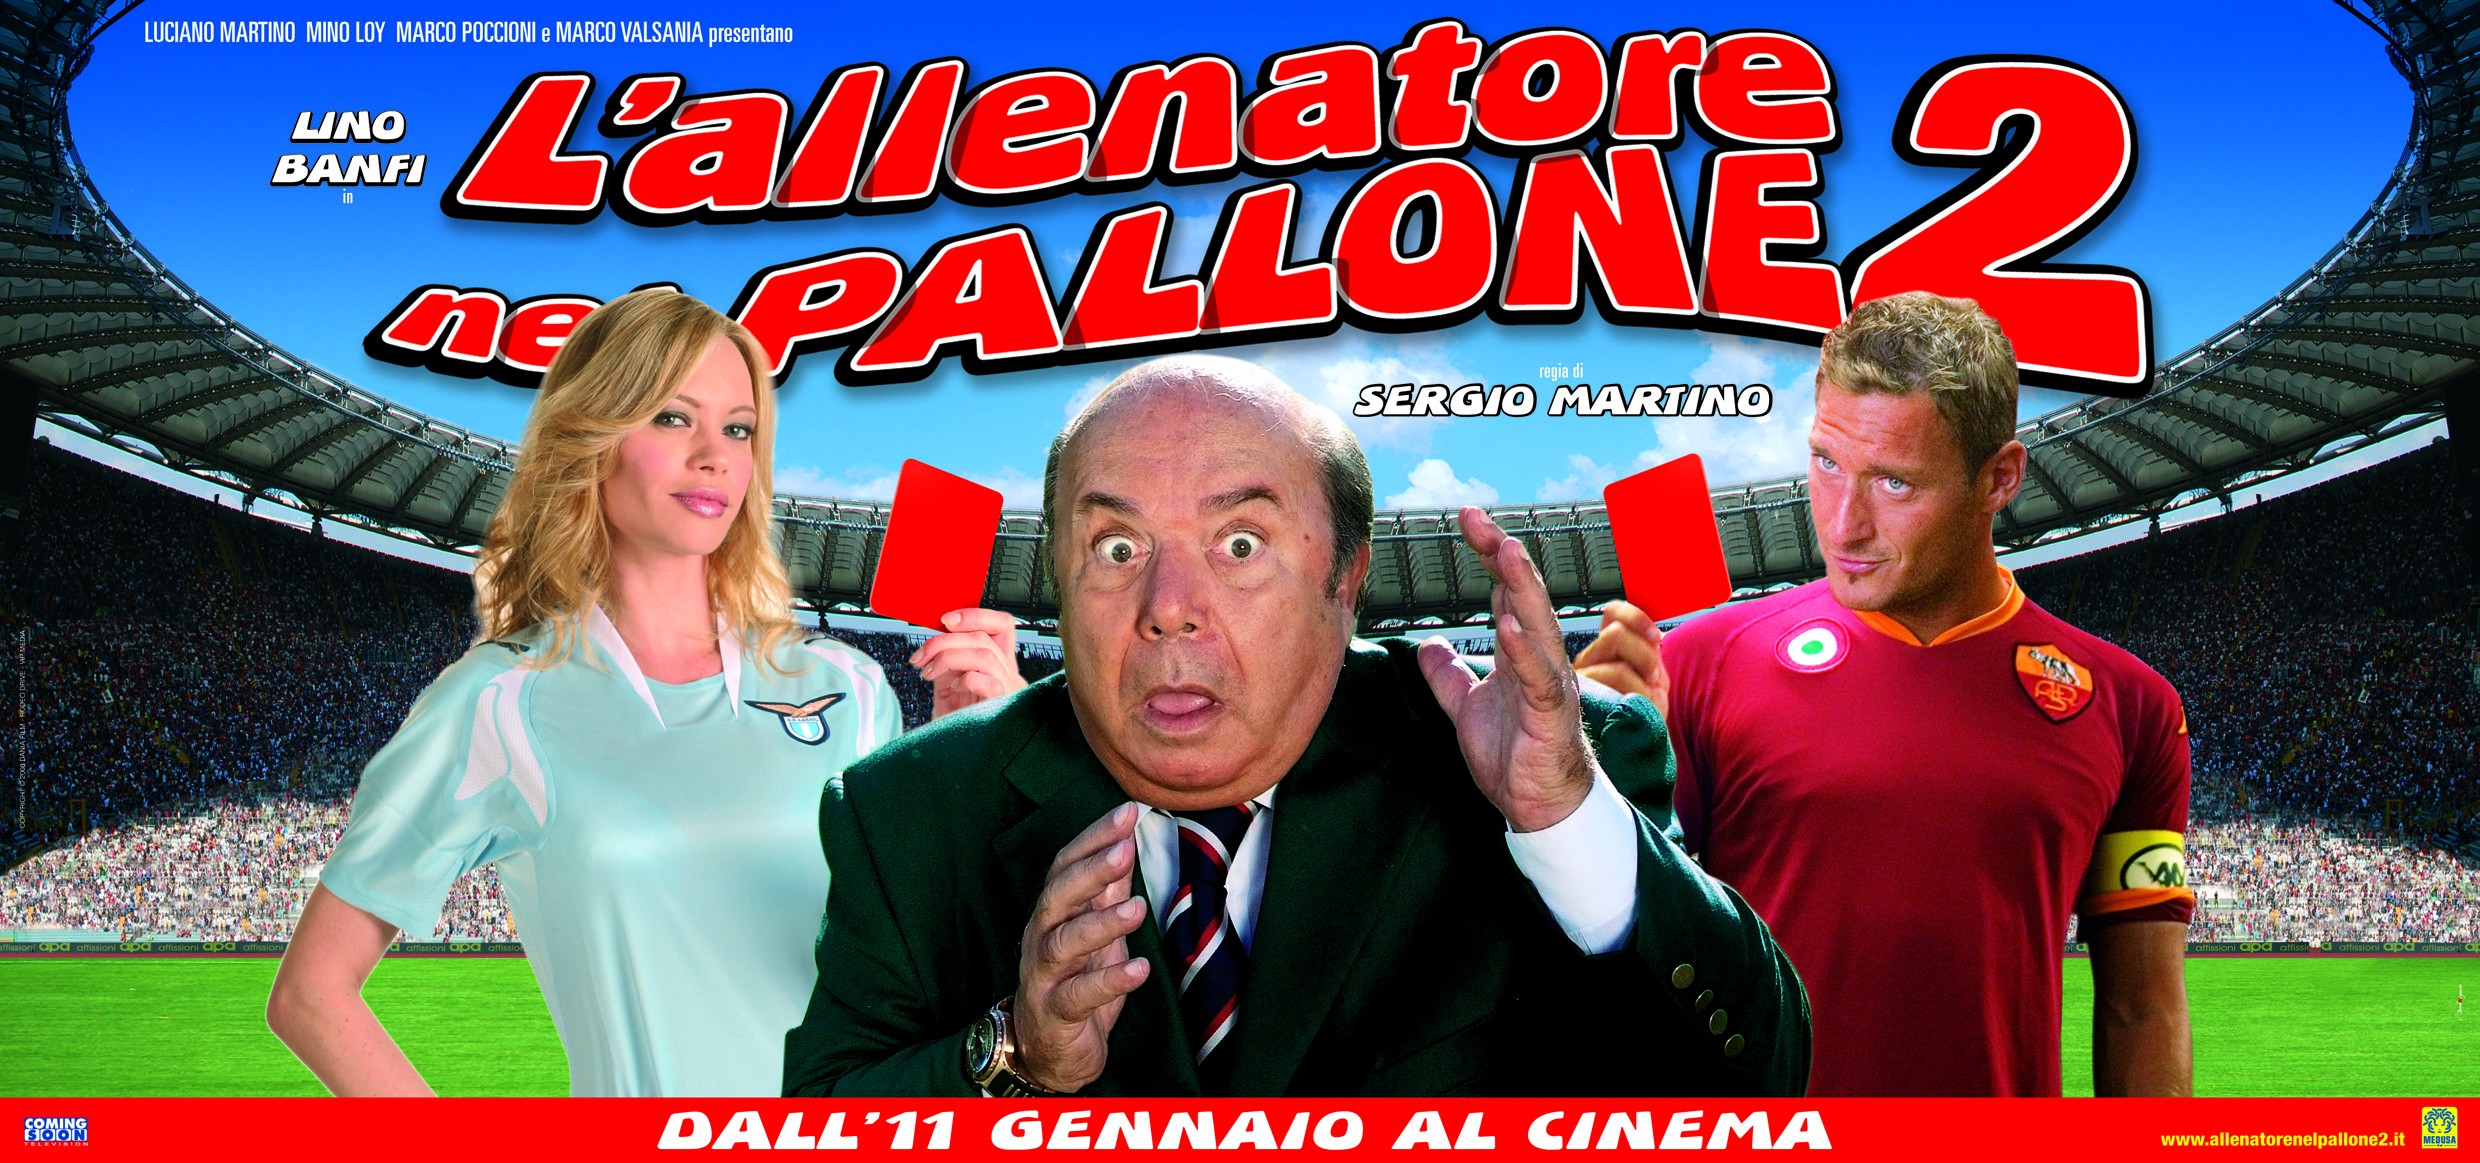 Mega Sized Movie Poster Image for L'allenatore nel pallone 2 (#2 of 2)